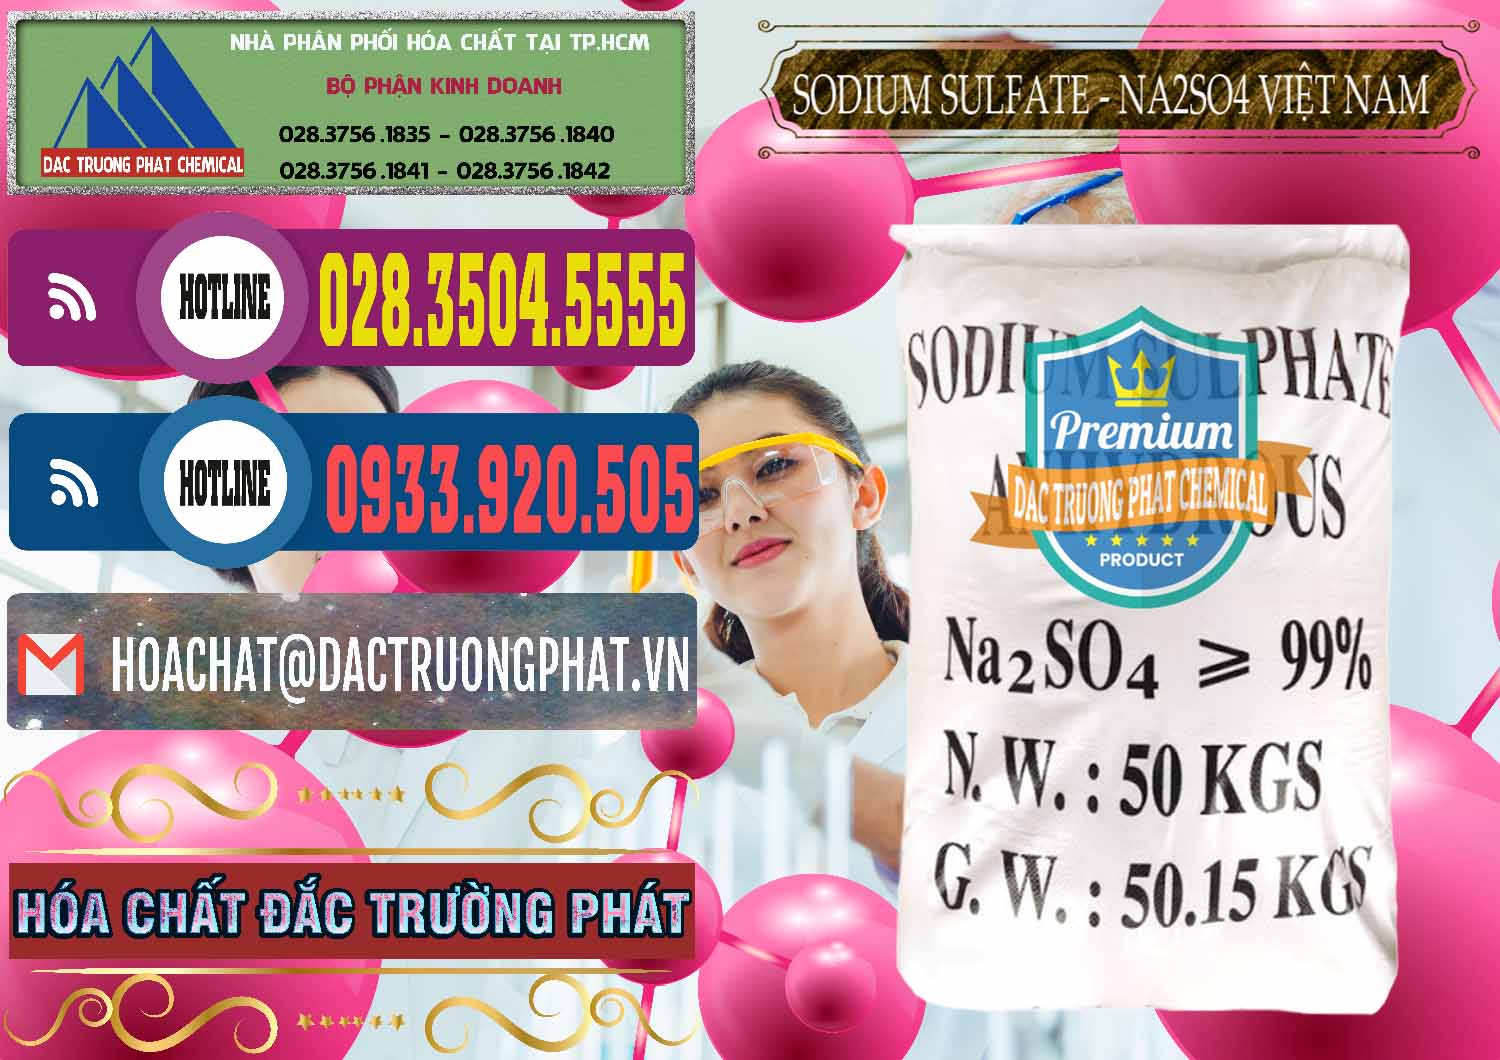 Công ty chuyên bán ( cung ứng ) Sodium Sulphate - Muối Sunfat Na2SO4 Việt Nam - 0355 - Đơn vị bán _ cung ứng hóa chất tại TP.HCM - muabanhoachat.com.vn